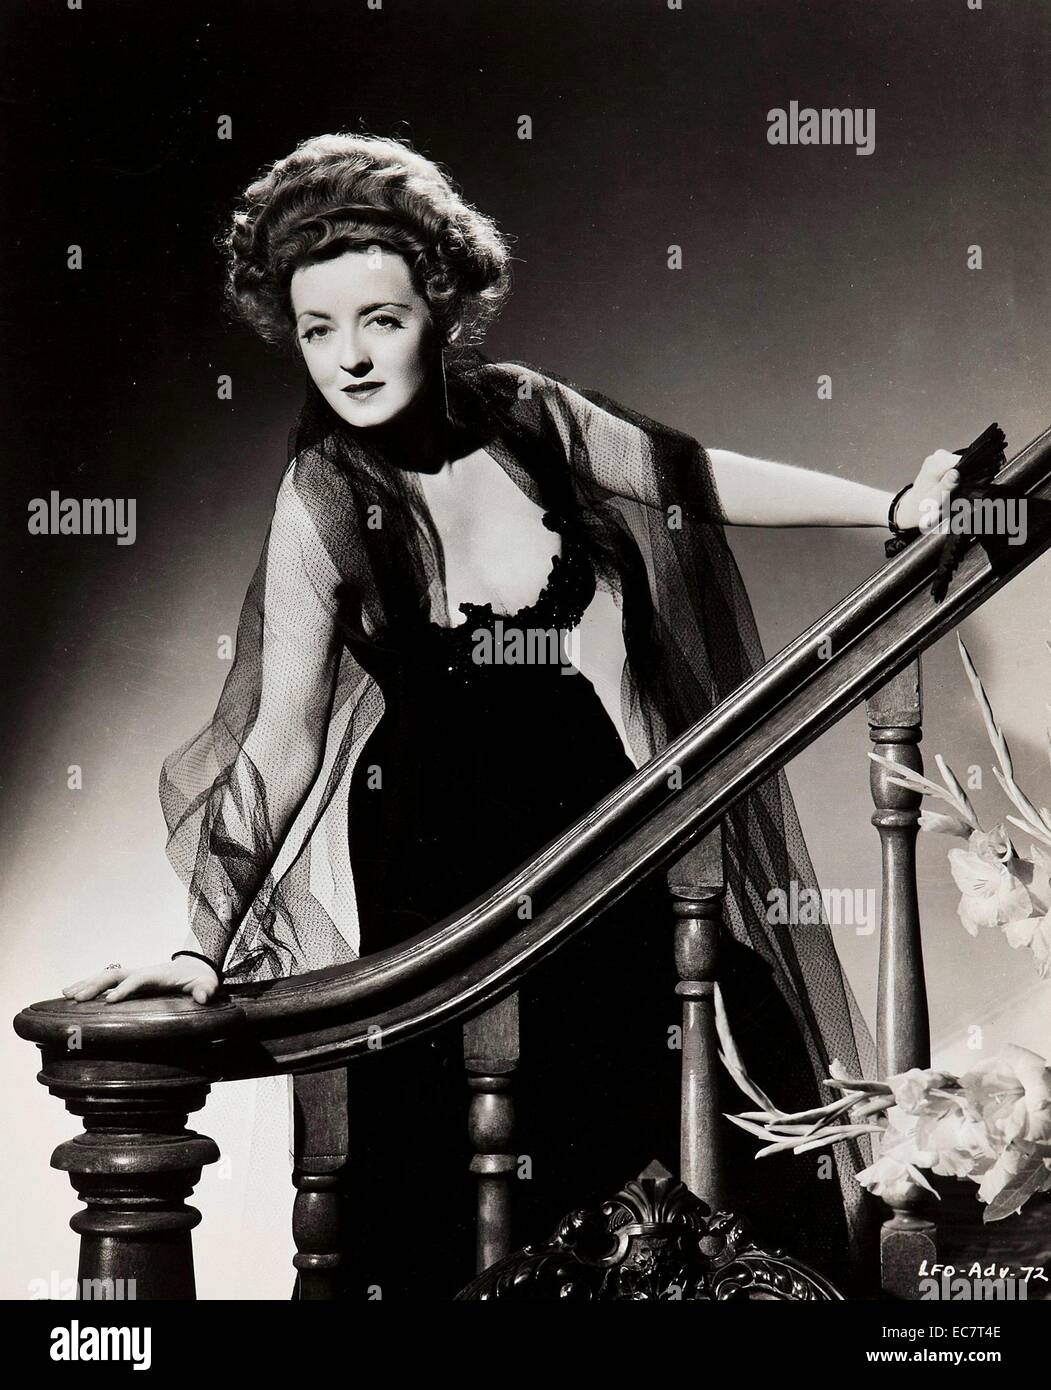 Le Piccole volpi, 1941, è un American Drama film diretto da William Wyler. La sceneggiatura di Lillian Hellman è basata sulla sua 1939 giocare con lo stesso nome. Interpretato da Bette Davis, Herbert Marshall e Teresa Wright. Foto Stock